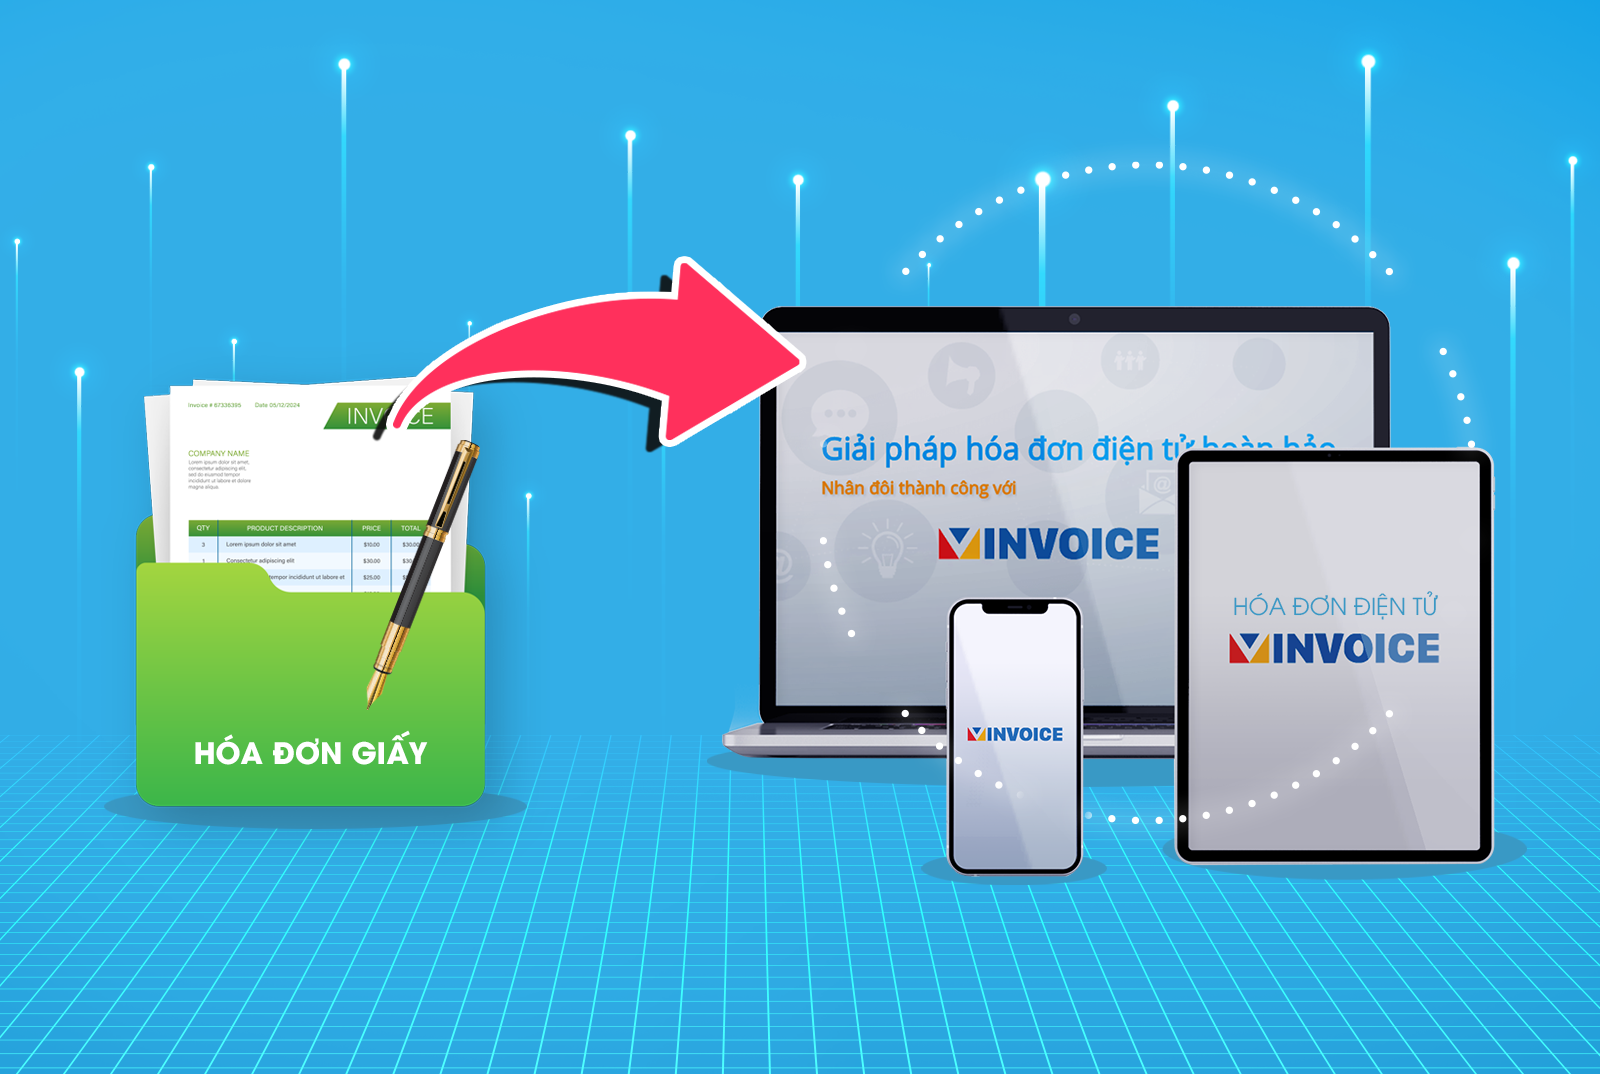 NextPay miễn phí 2 năm sử dụng hóa đơn điện tử VInvoice cho tất cả khách hàng